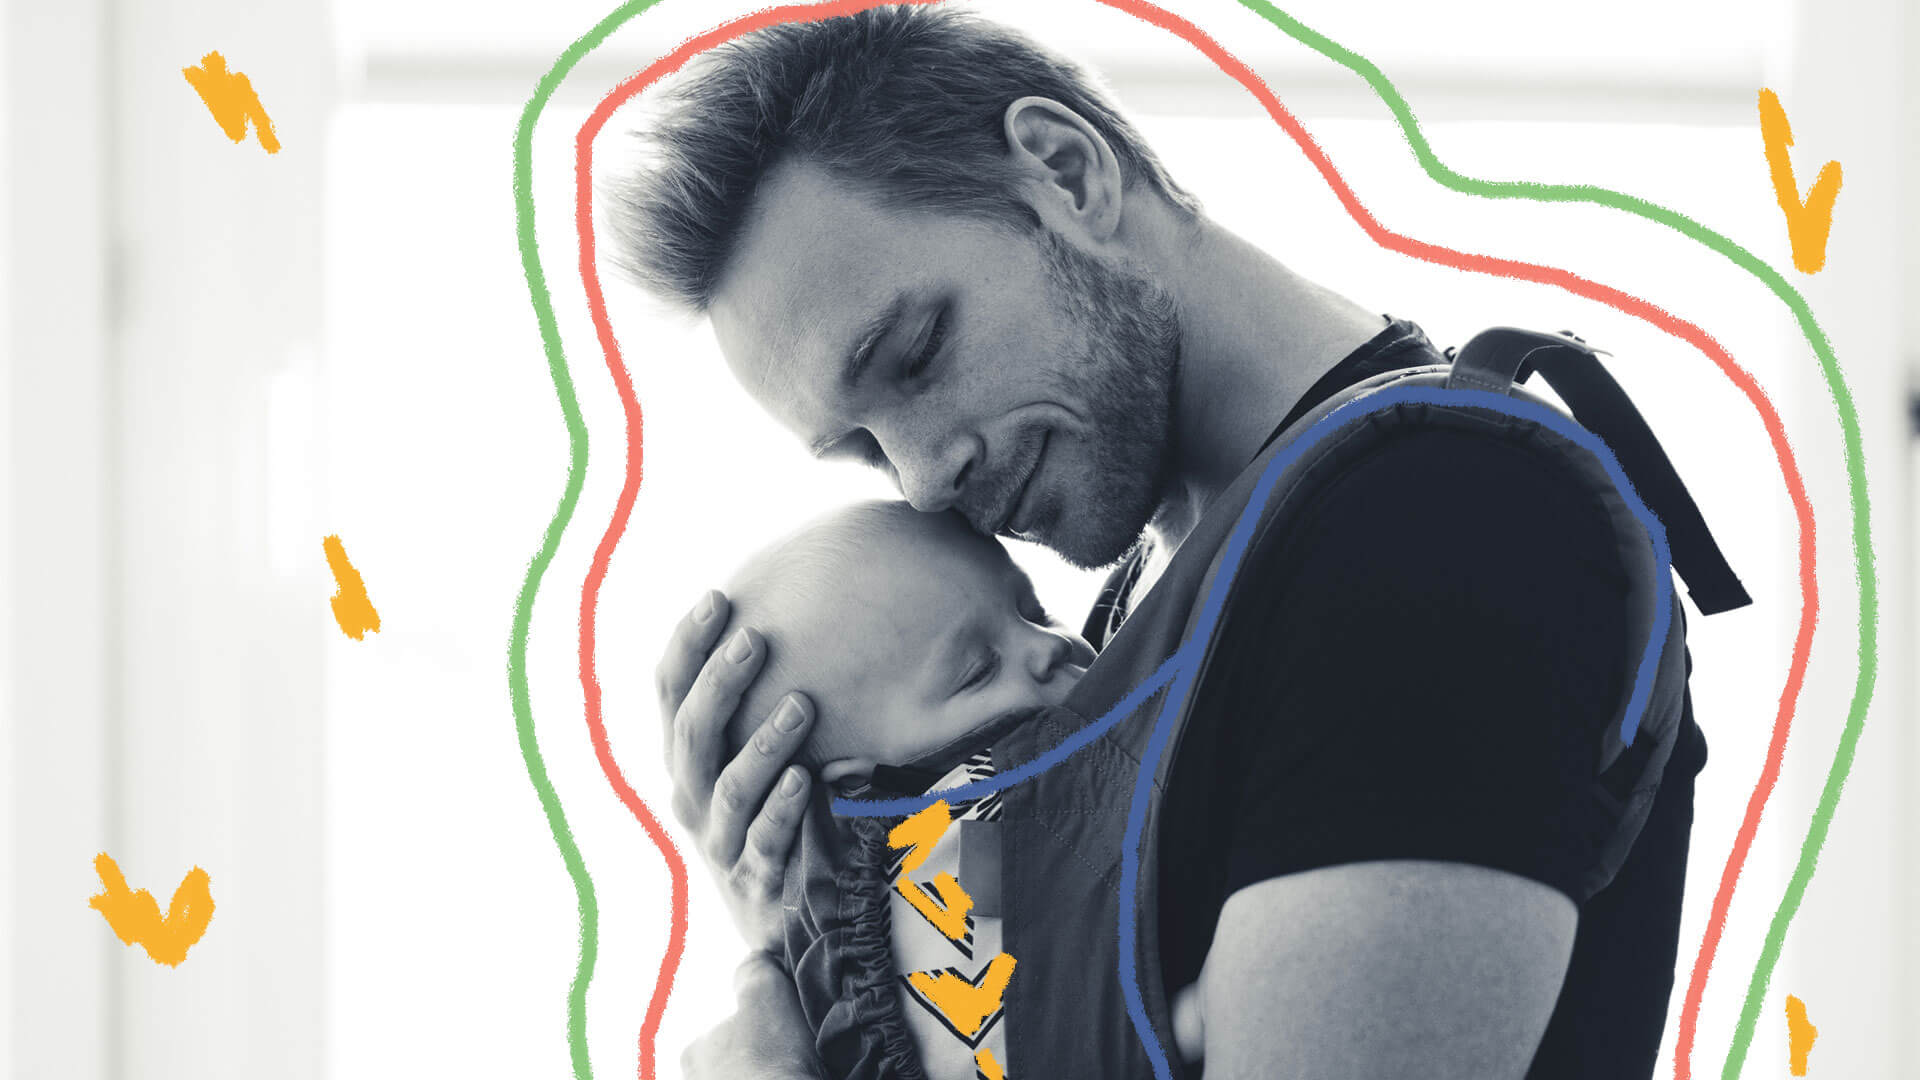 Foto em preto e branco mostra um pai segurando um bebê próximo ao seu corpo, pelo sling.